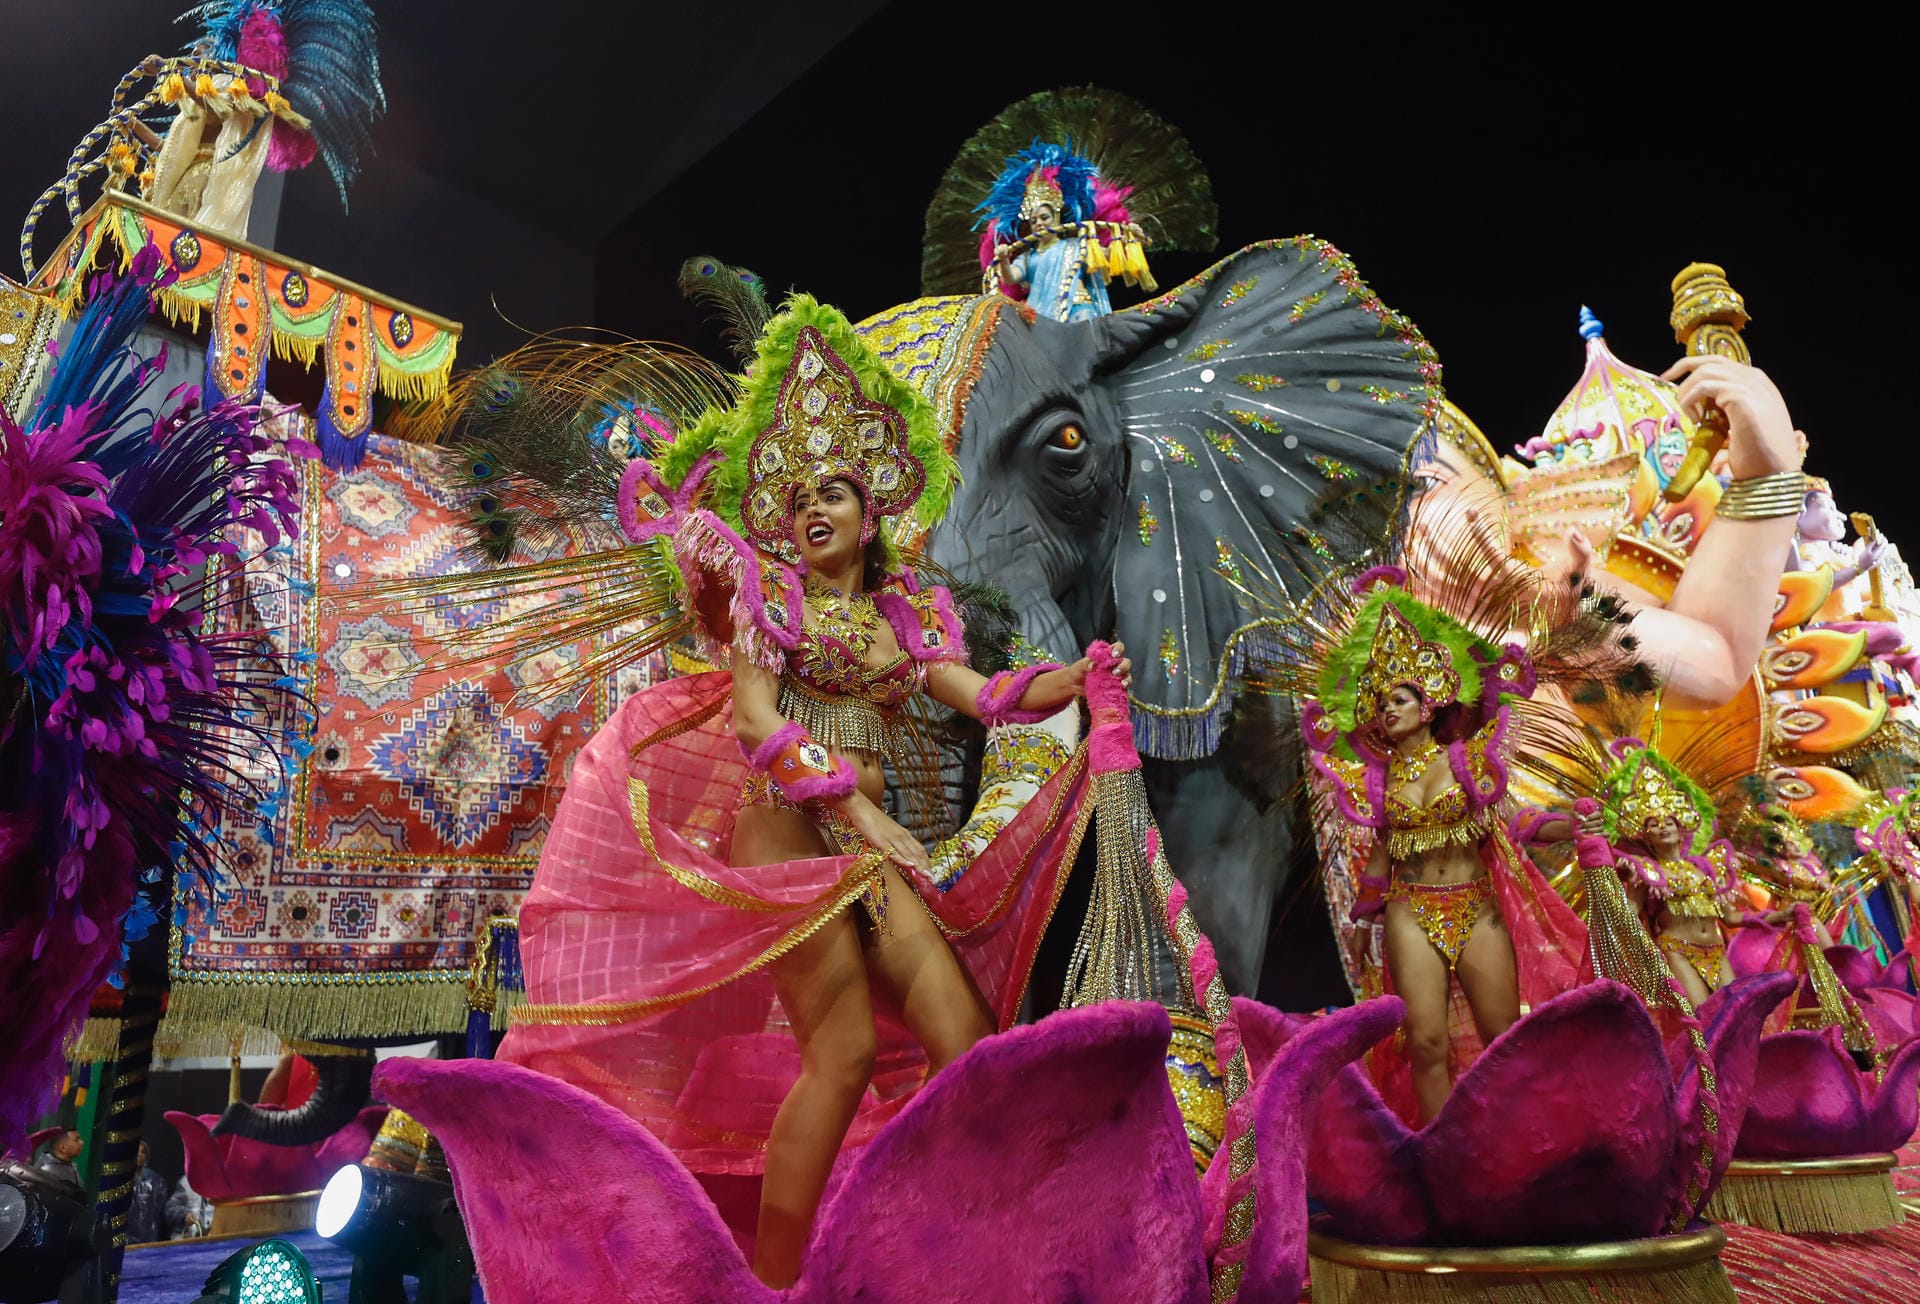 Tänzer der Perola Negra Samba School: Auch am zweiten Tag des Karnevals kommt keine Müdigkeit auf.